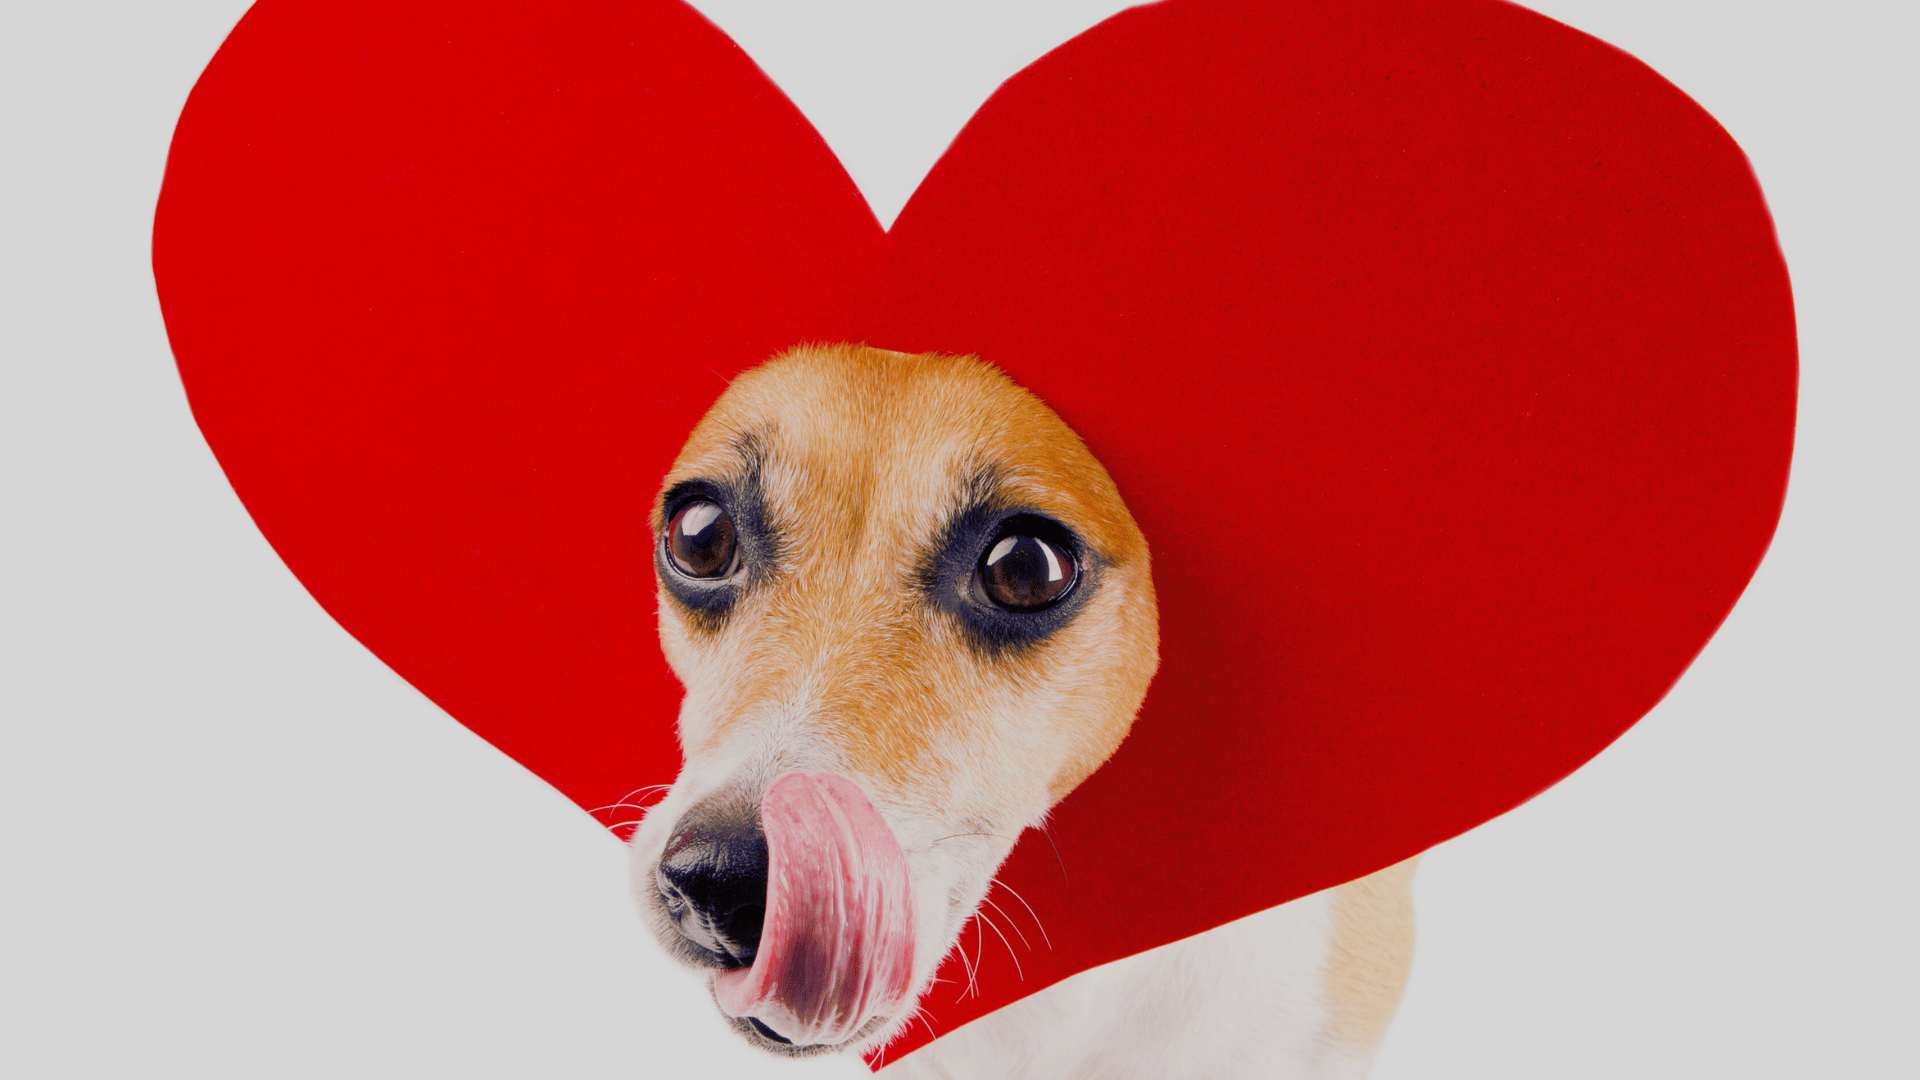 Cachorrinho engraçado com um formato de coração na cabeça.